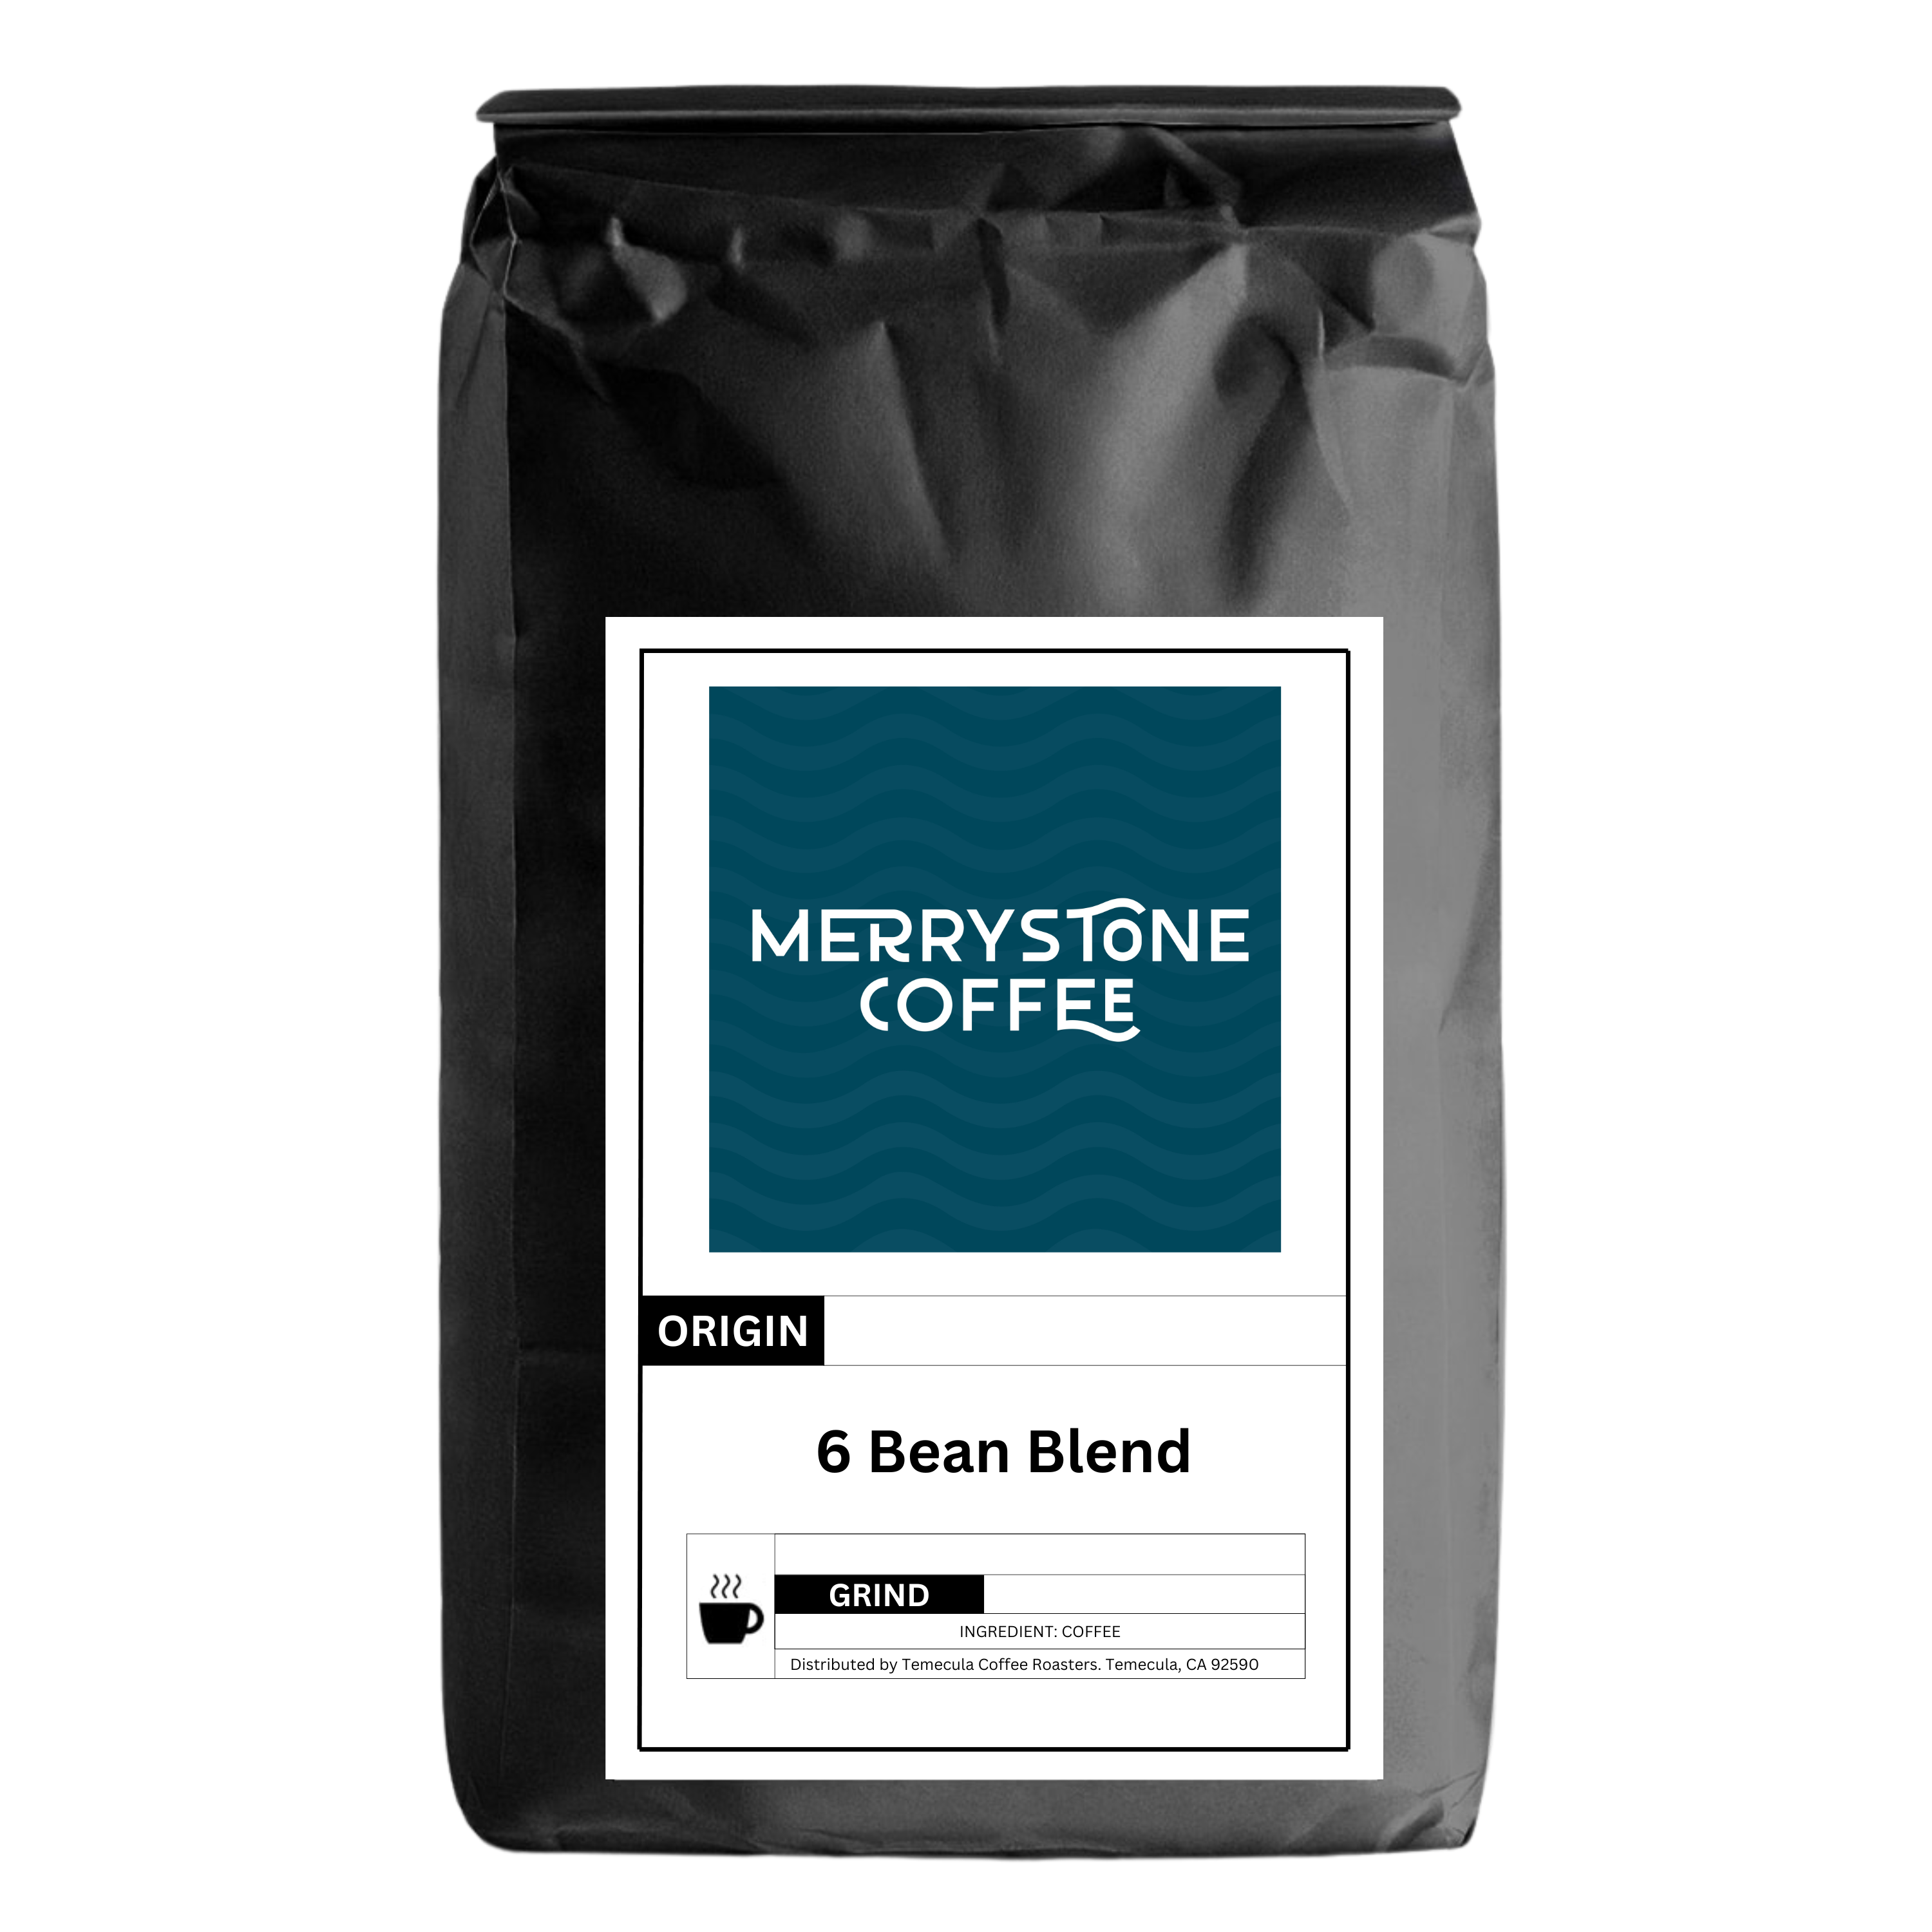 Premium 6 Bean Coffee Blend